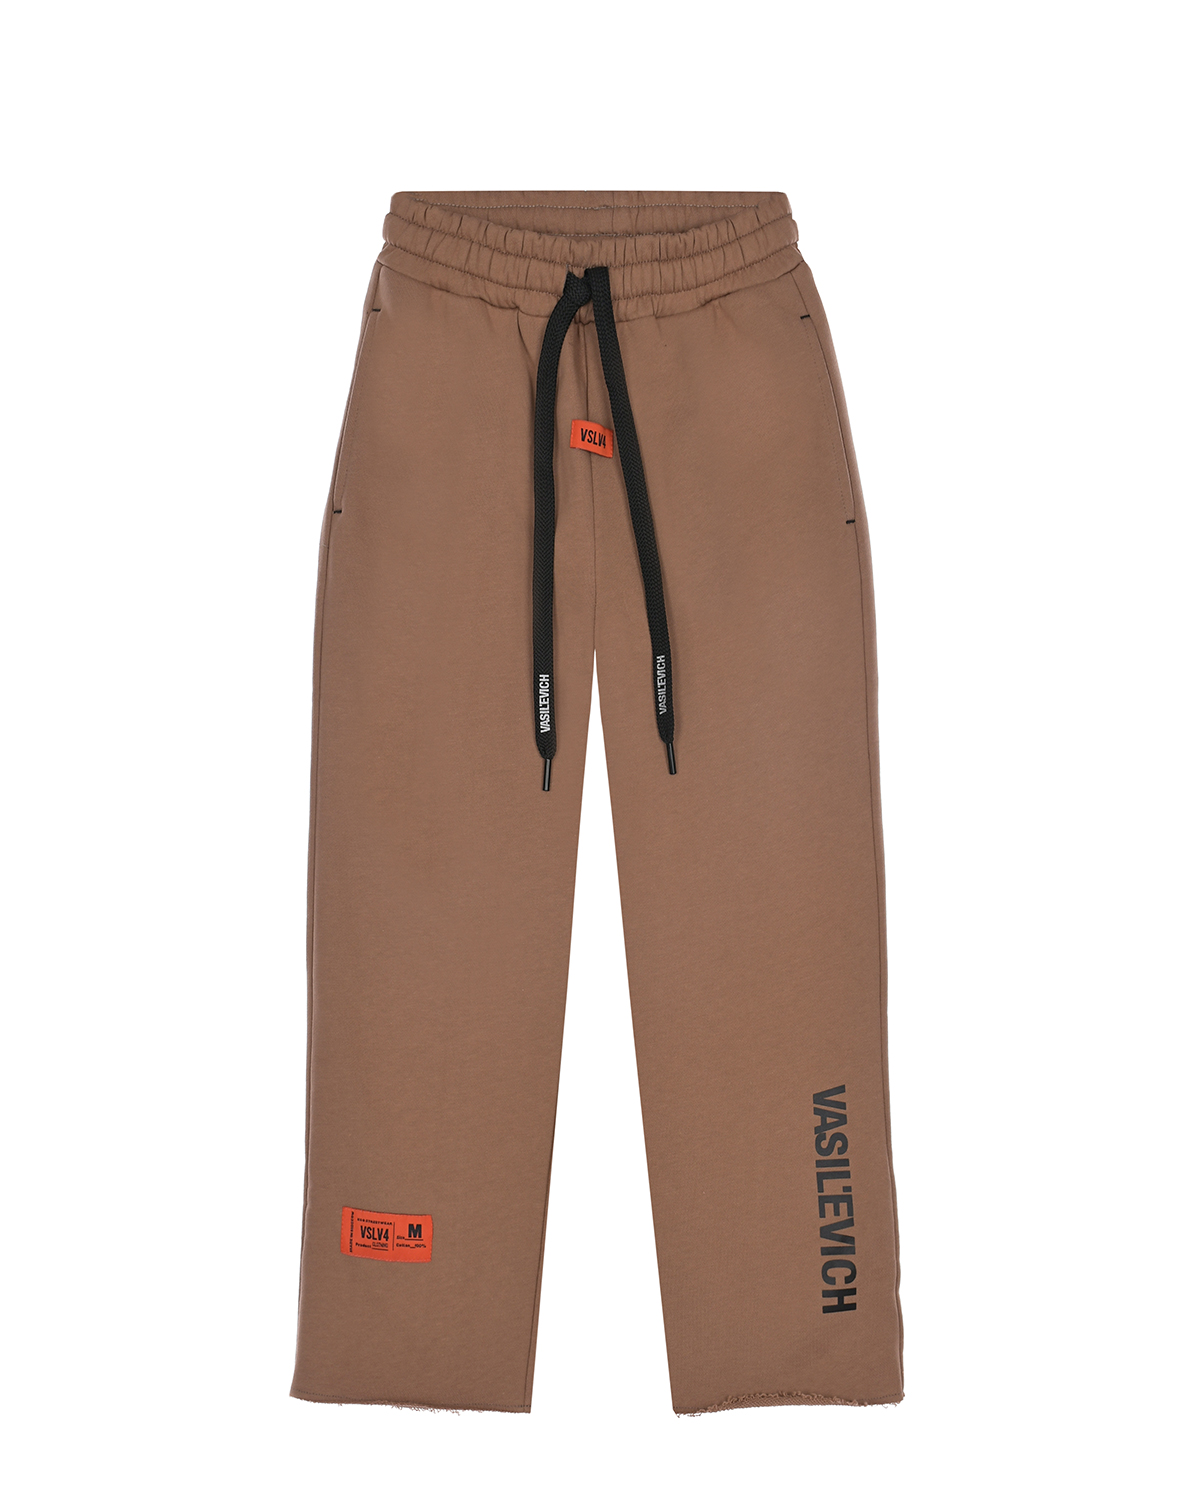 Бежевые спортивные брюки VASILEVICH черные спортивные брюки с оранжевым лого vasilevich